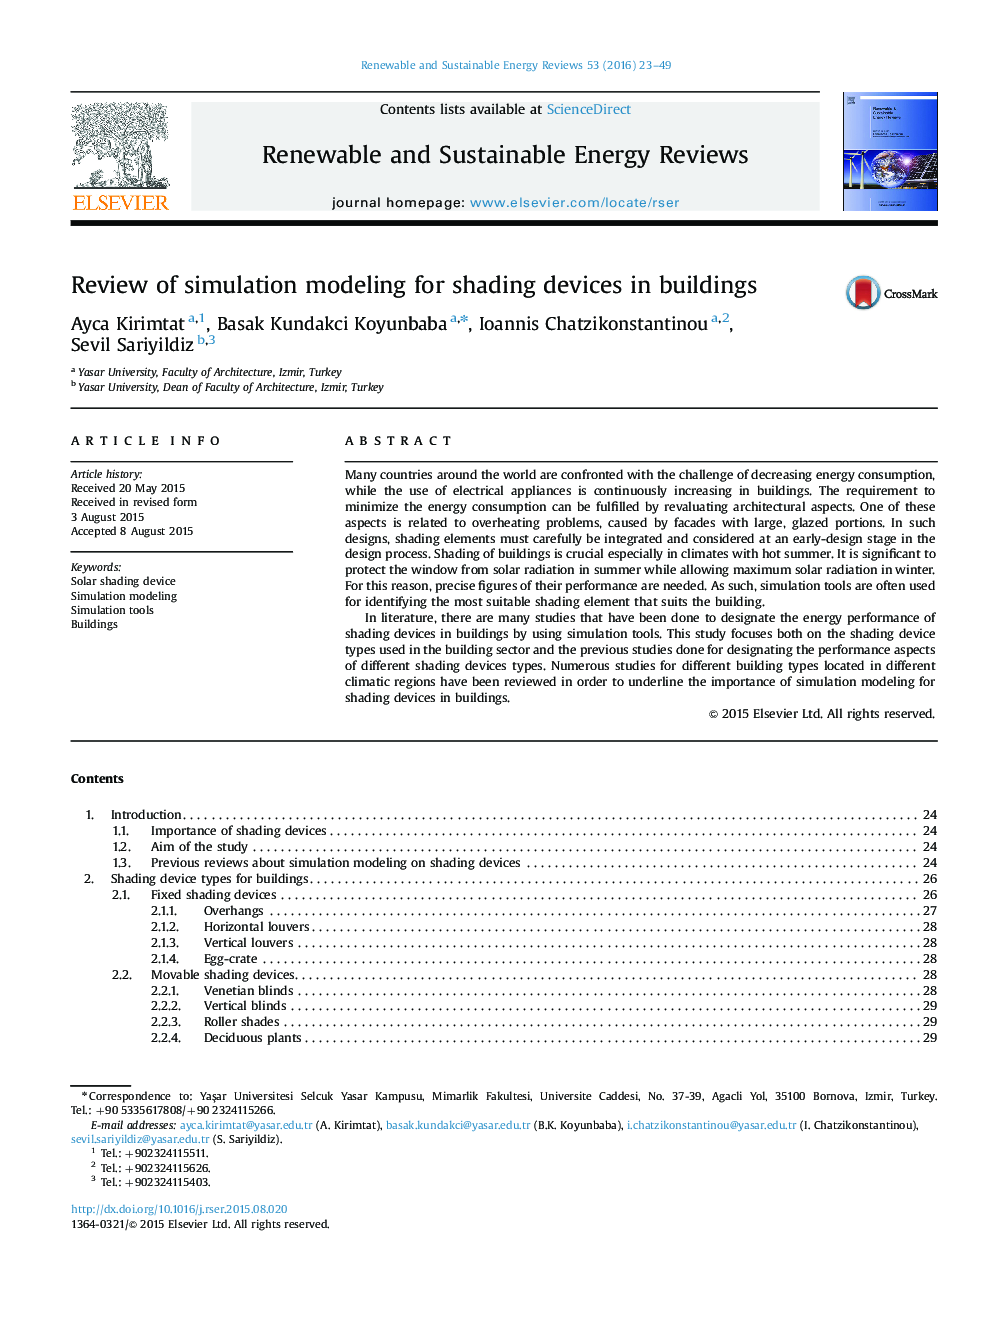 بررسی مدل سازی شبیه سازی برای دستگاه های سایه در ساختمان 